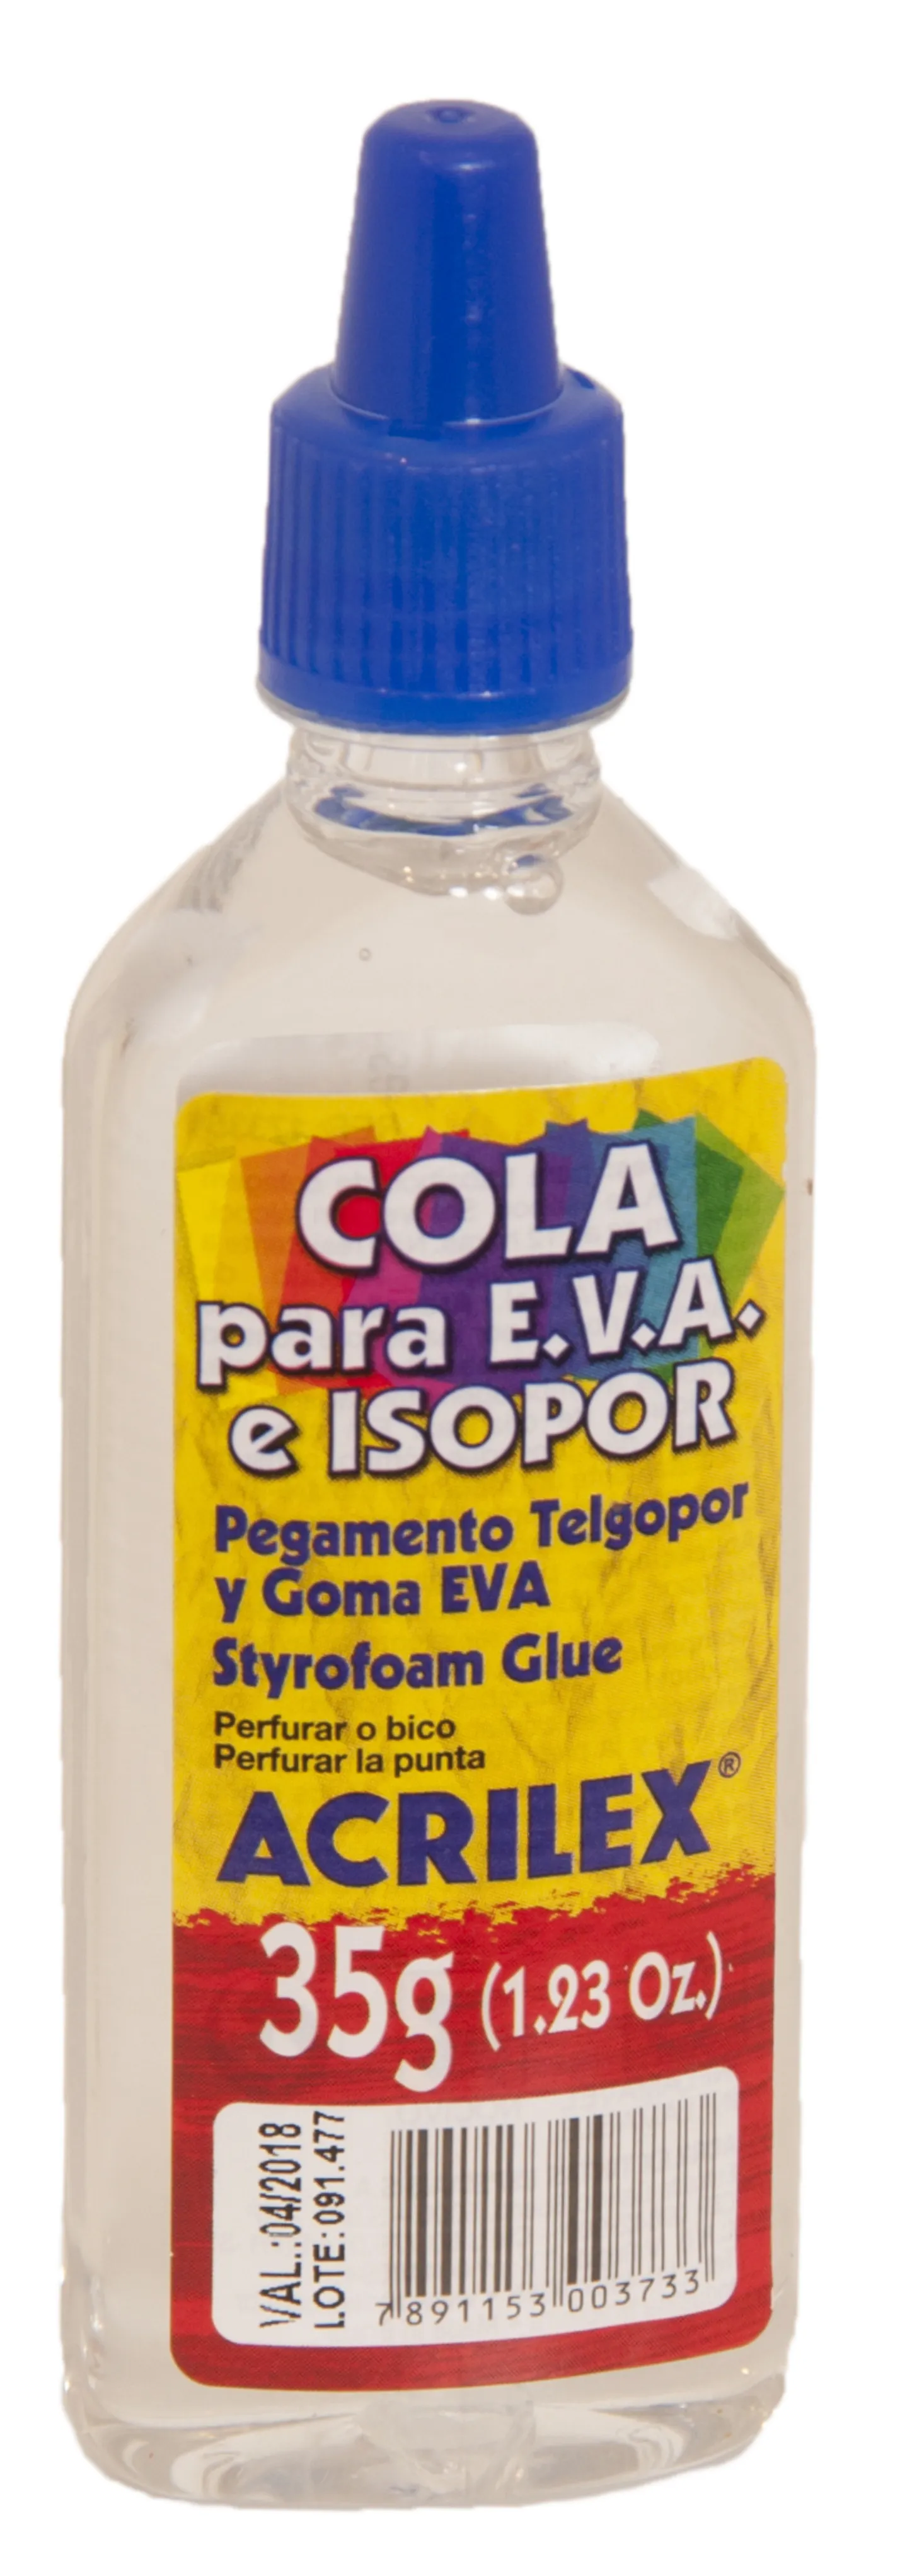 styrofoam glue - 35g - clear